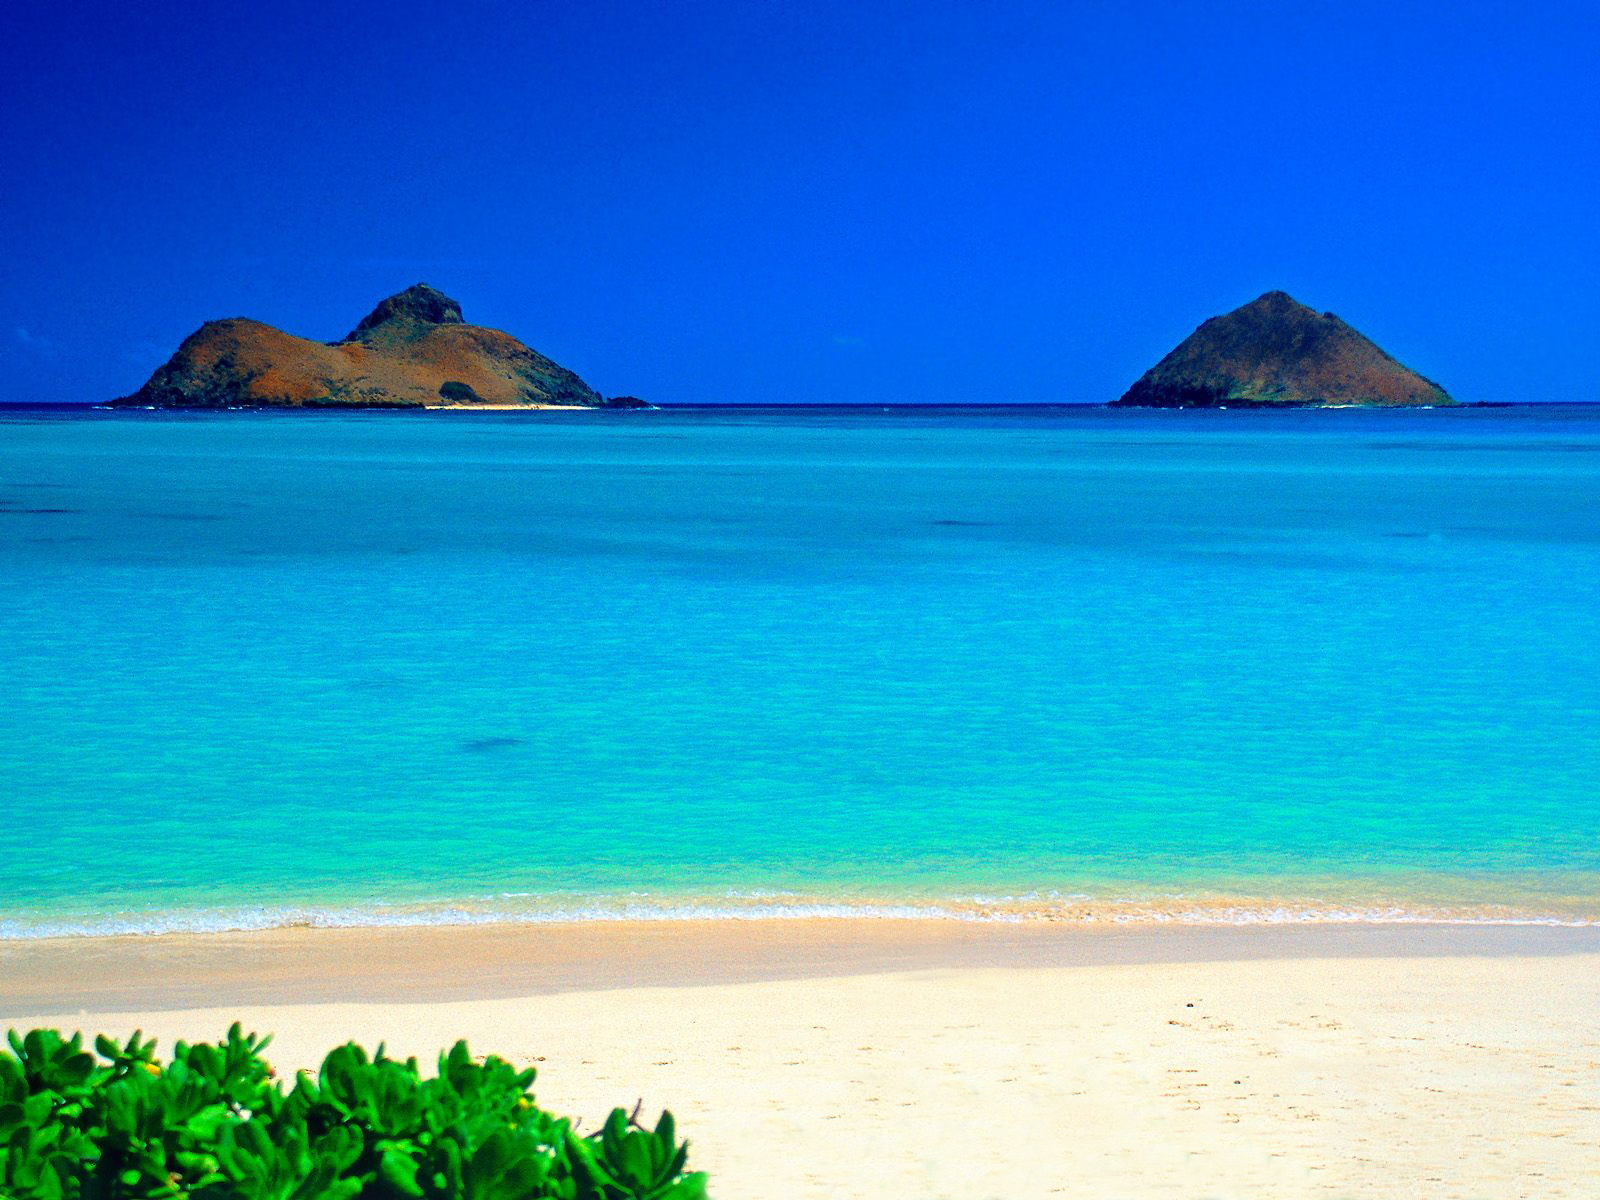 Hawaii islands